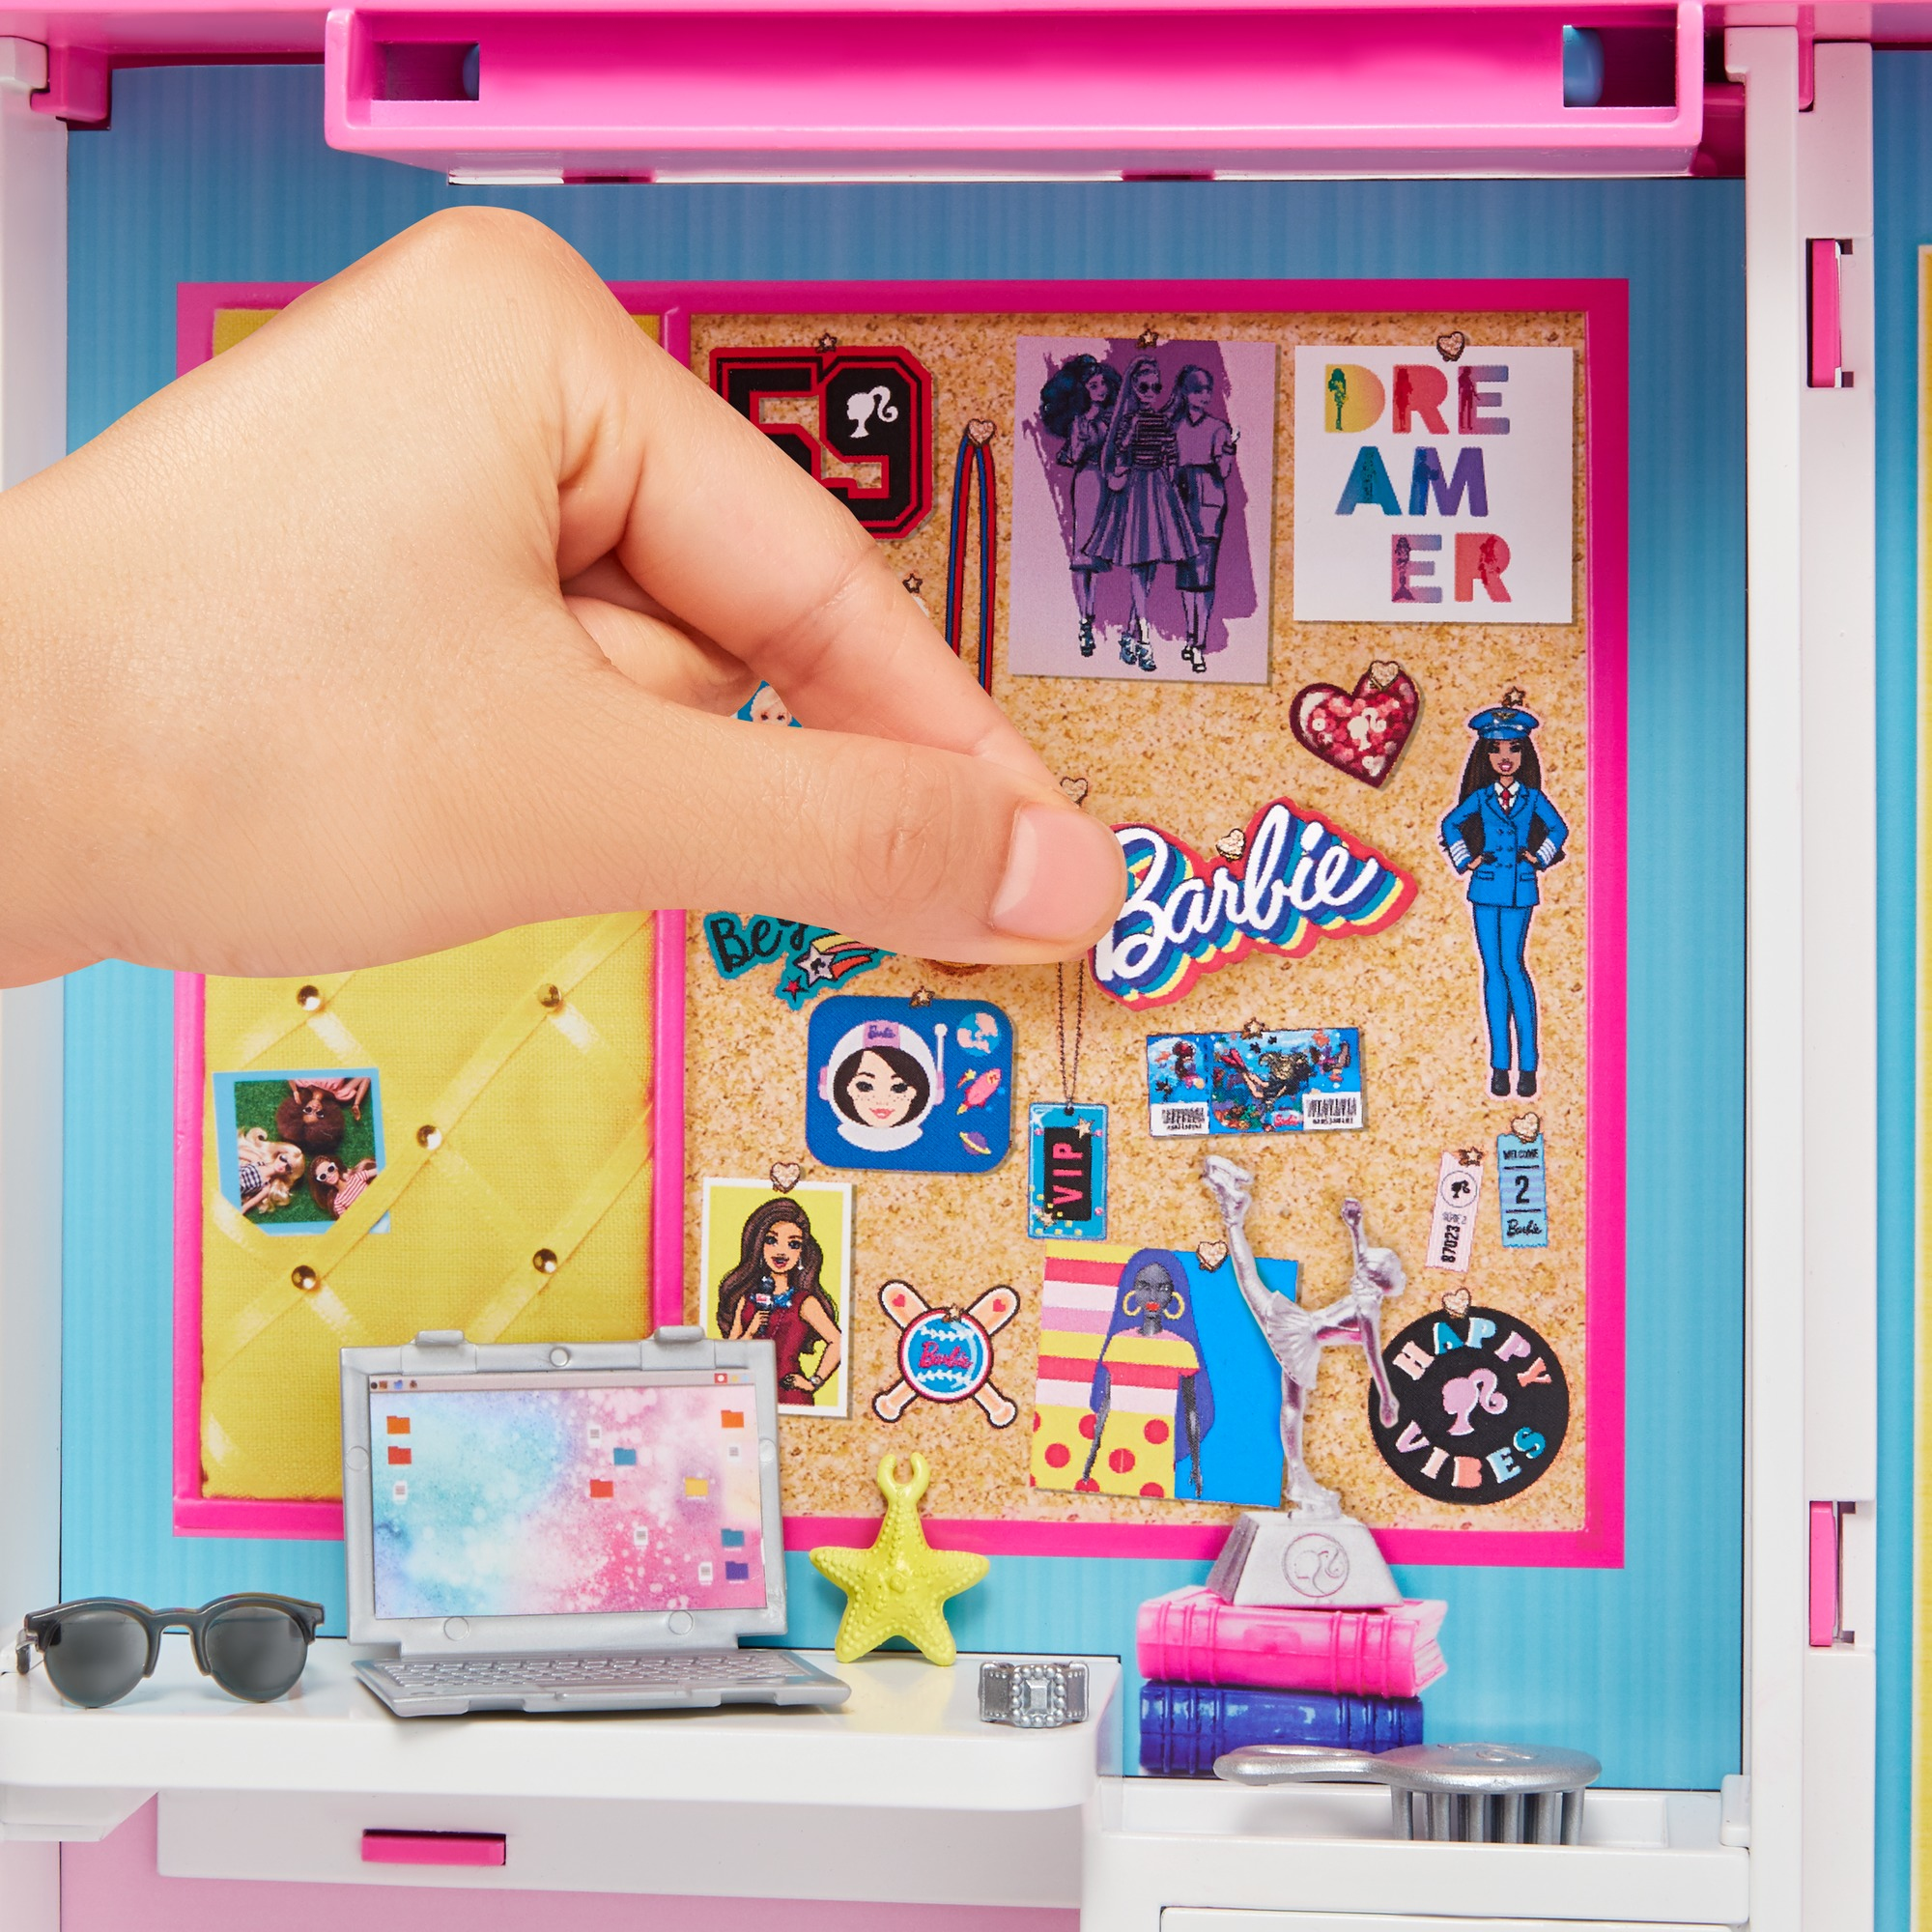 Bambola Barbie Dream Closet [GBK10]